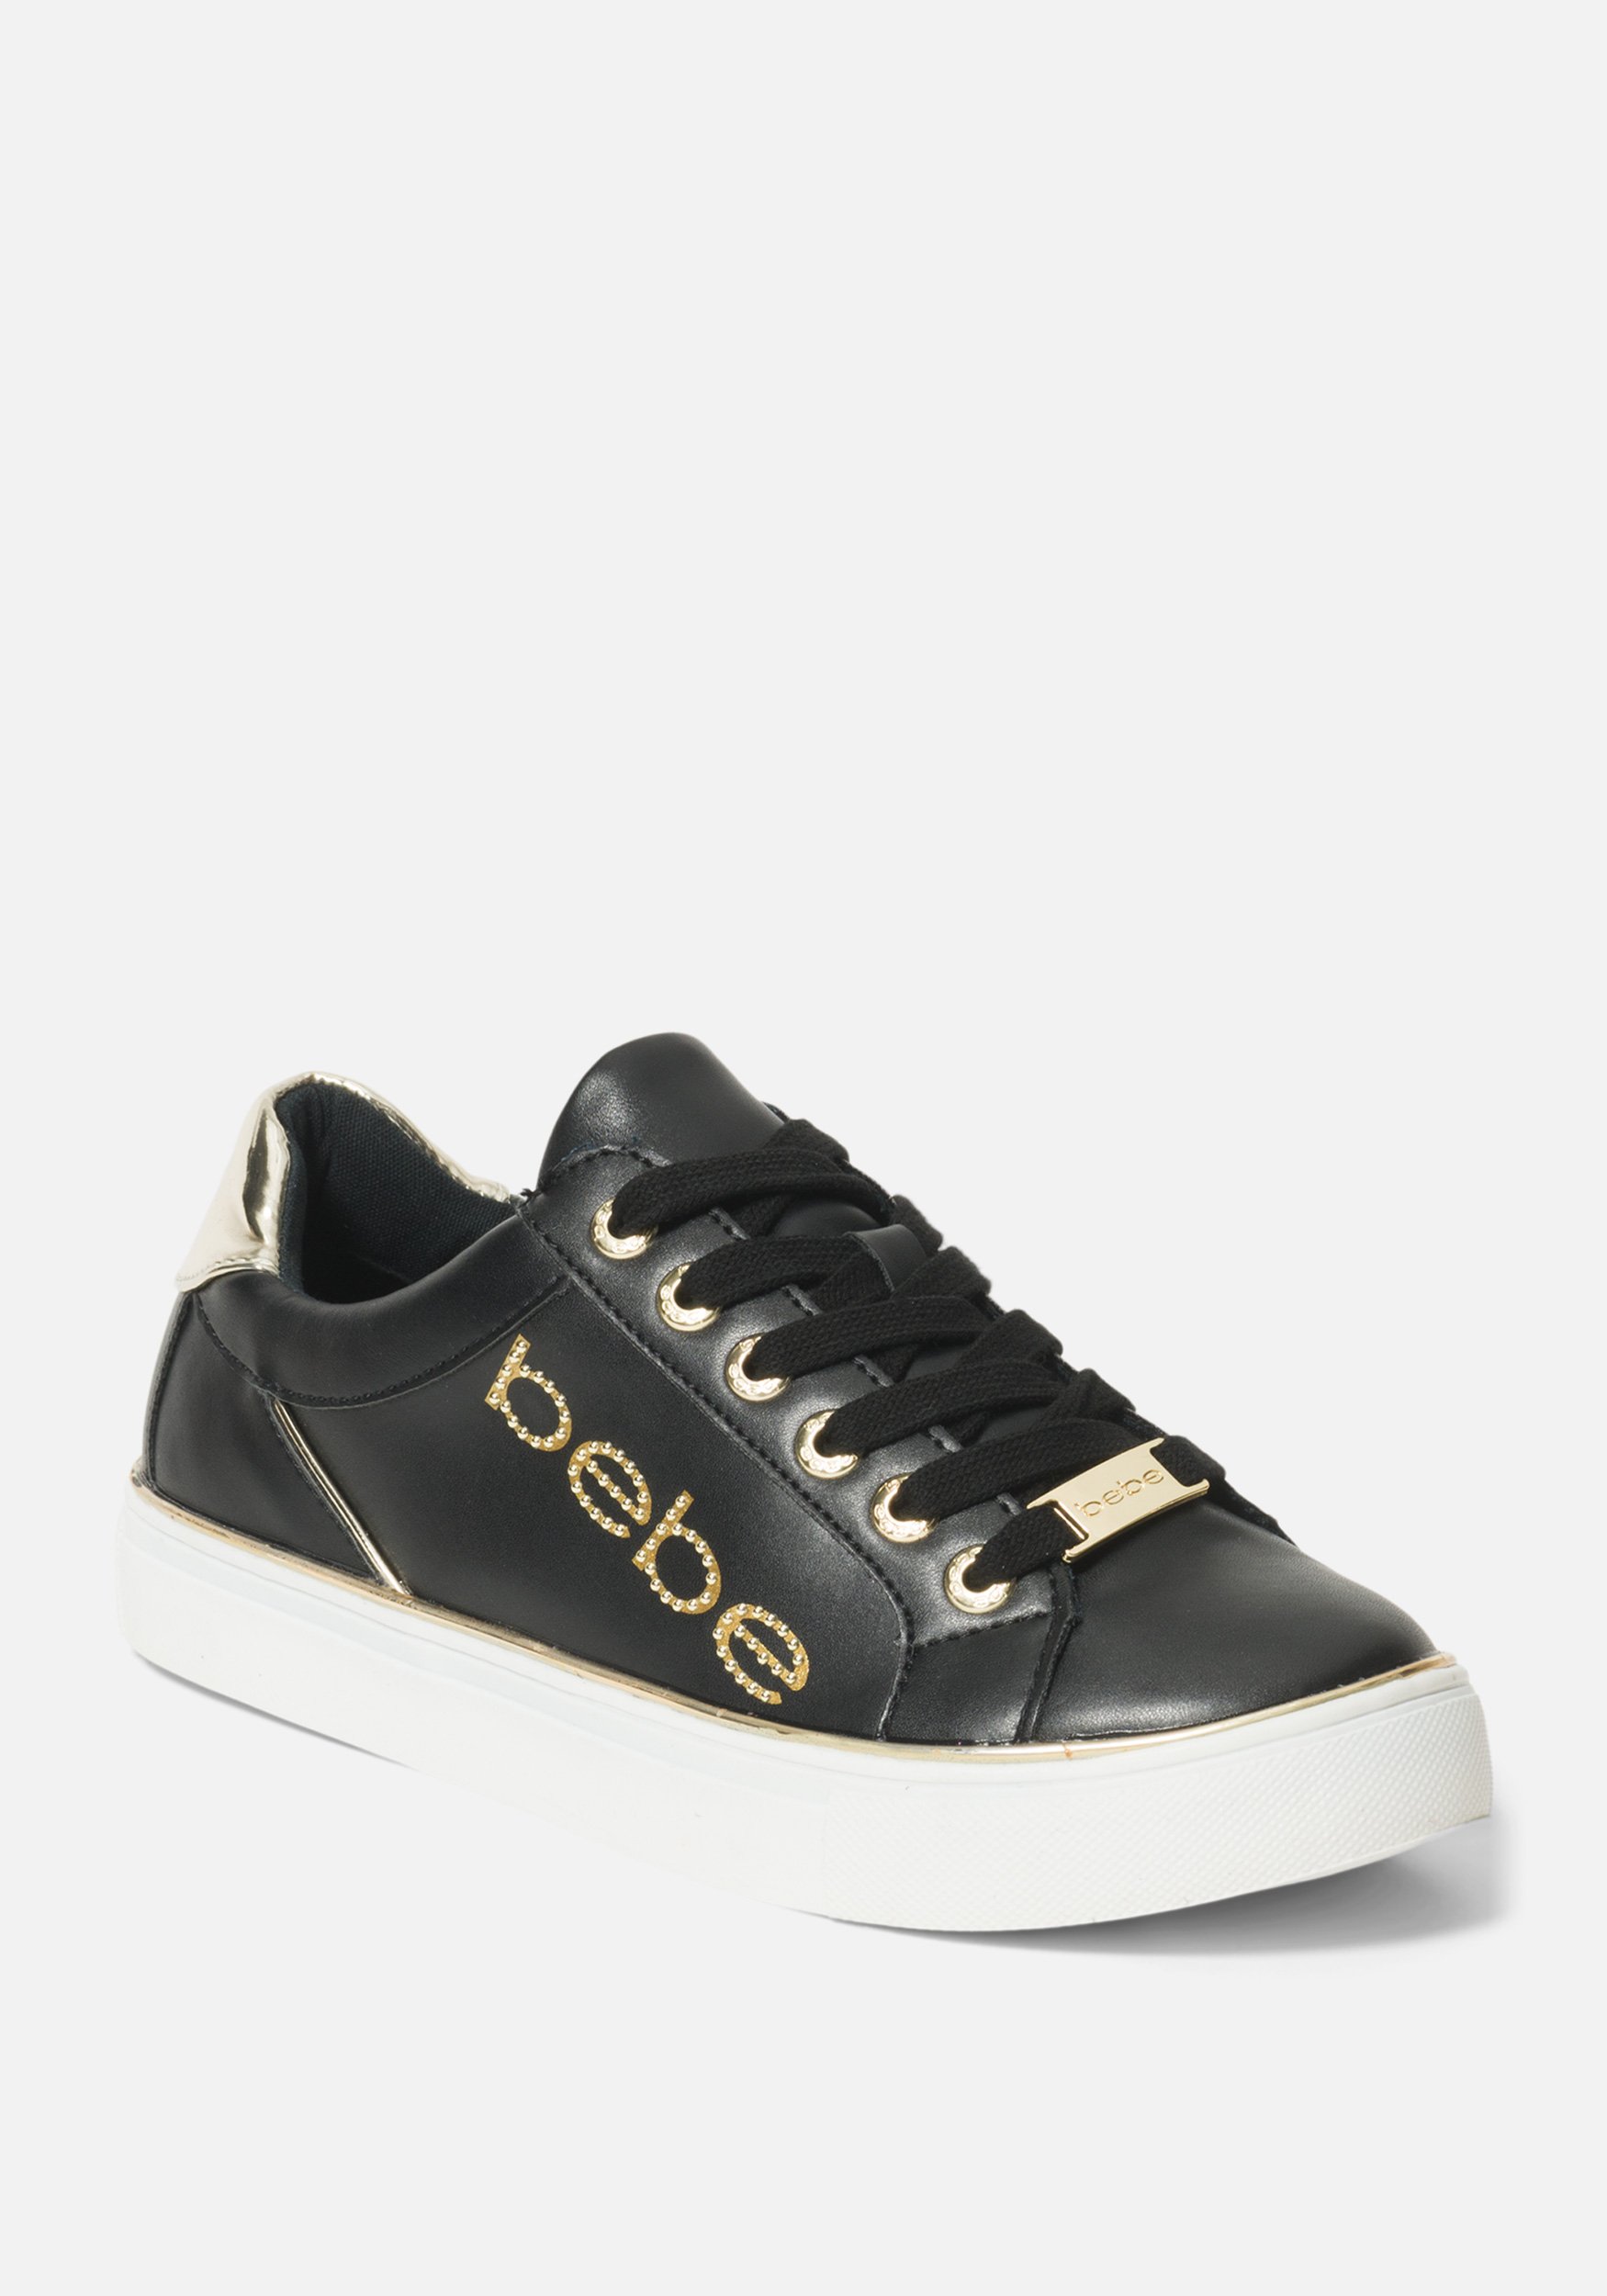 Women's Celise Bebe Logo Sneakers, Size 7 in Black/Gold Synthetic